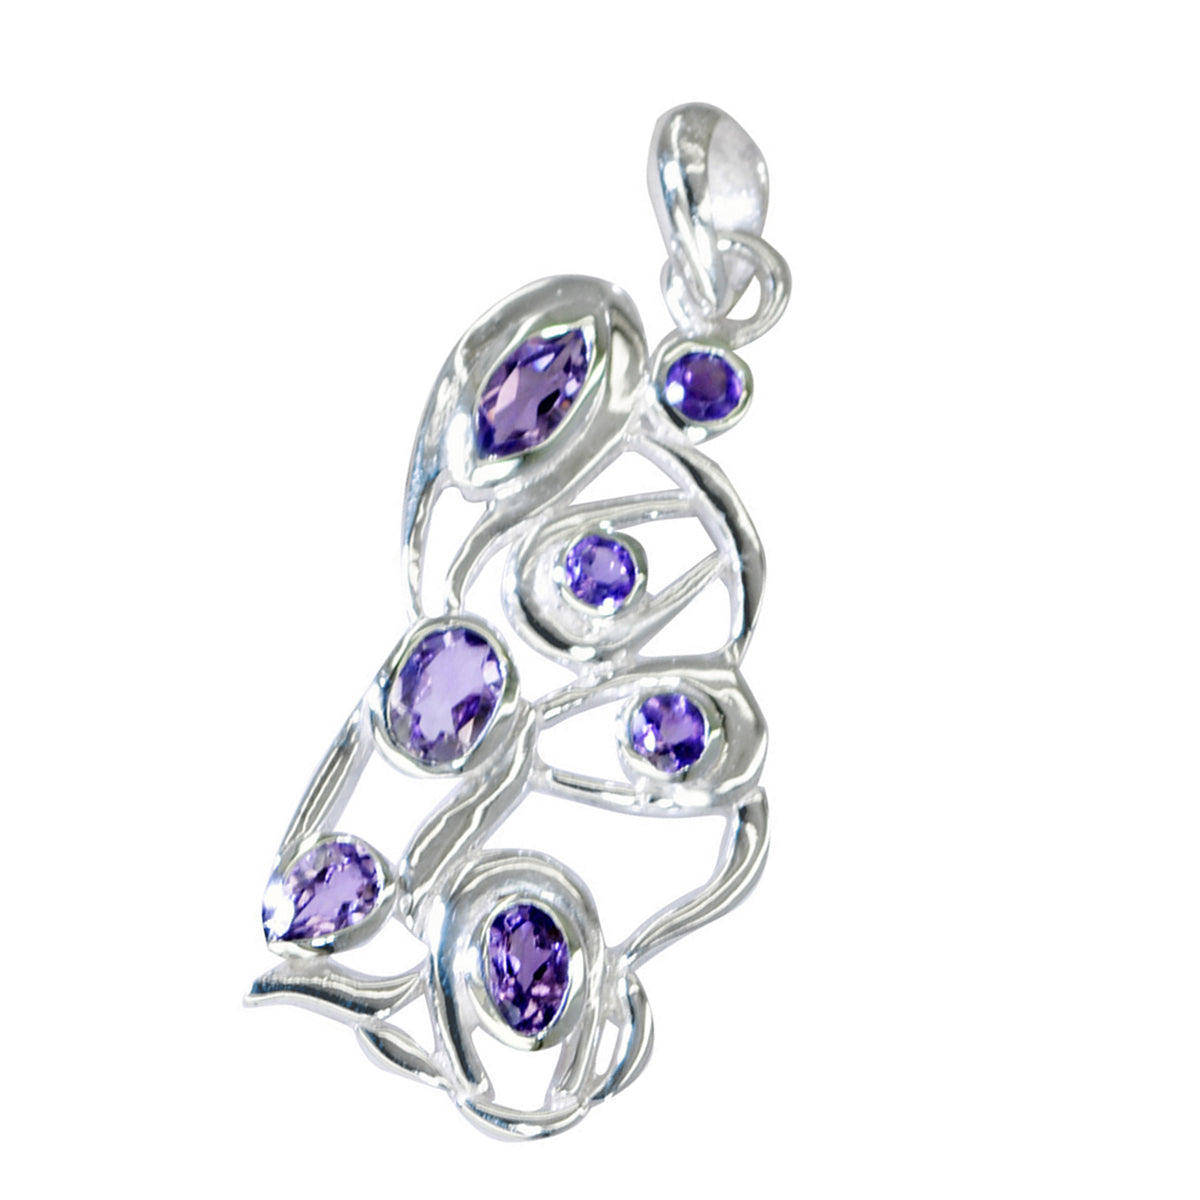 Кулон riyo с изысканными драгоценными камнями, многогранный фиолетовый аметист, цельное серебро, подарок на годовщину